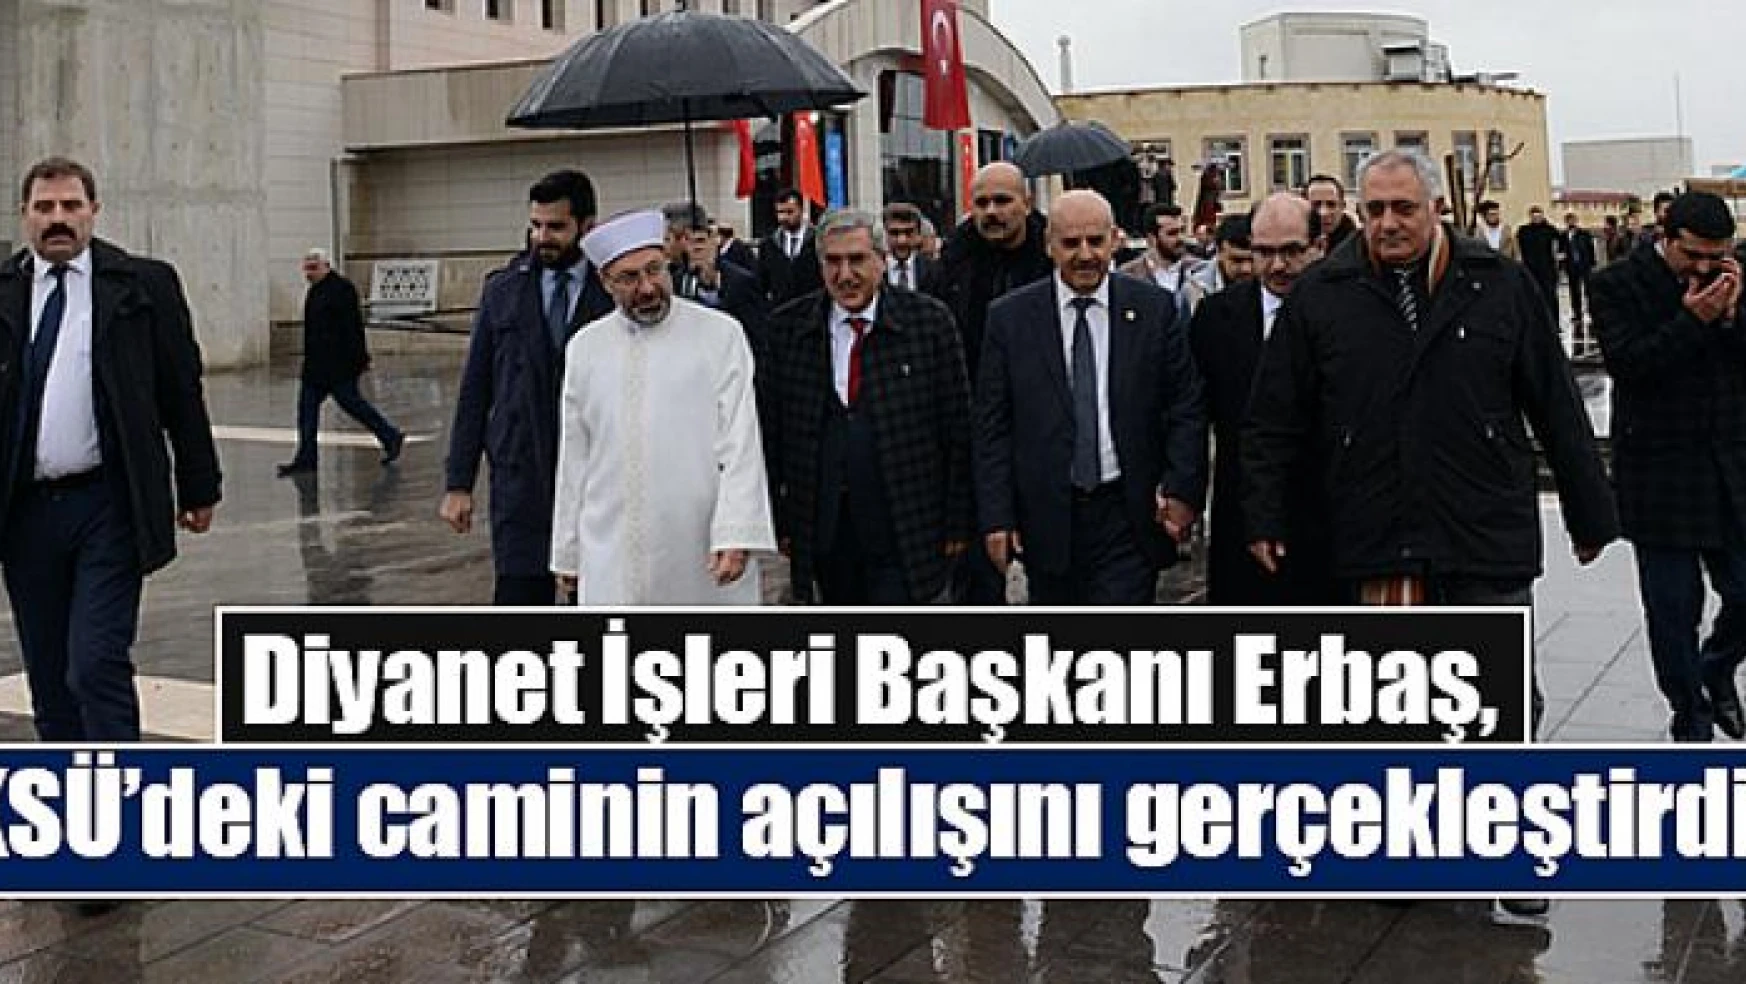 Diyanet İşleri Başkanı Erbaş, KSÜ'deki caminin açılışını gerçekleştirdi!